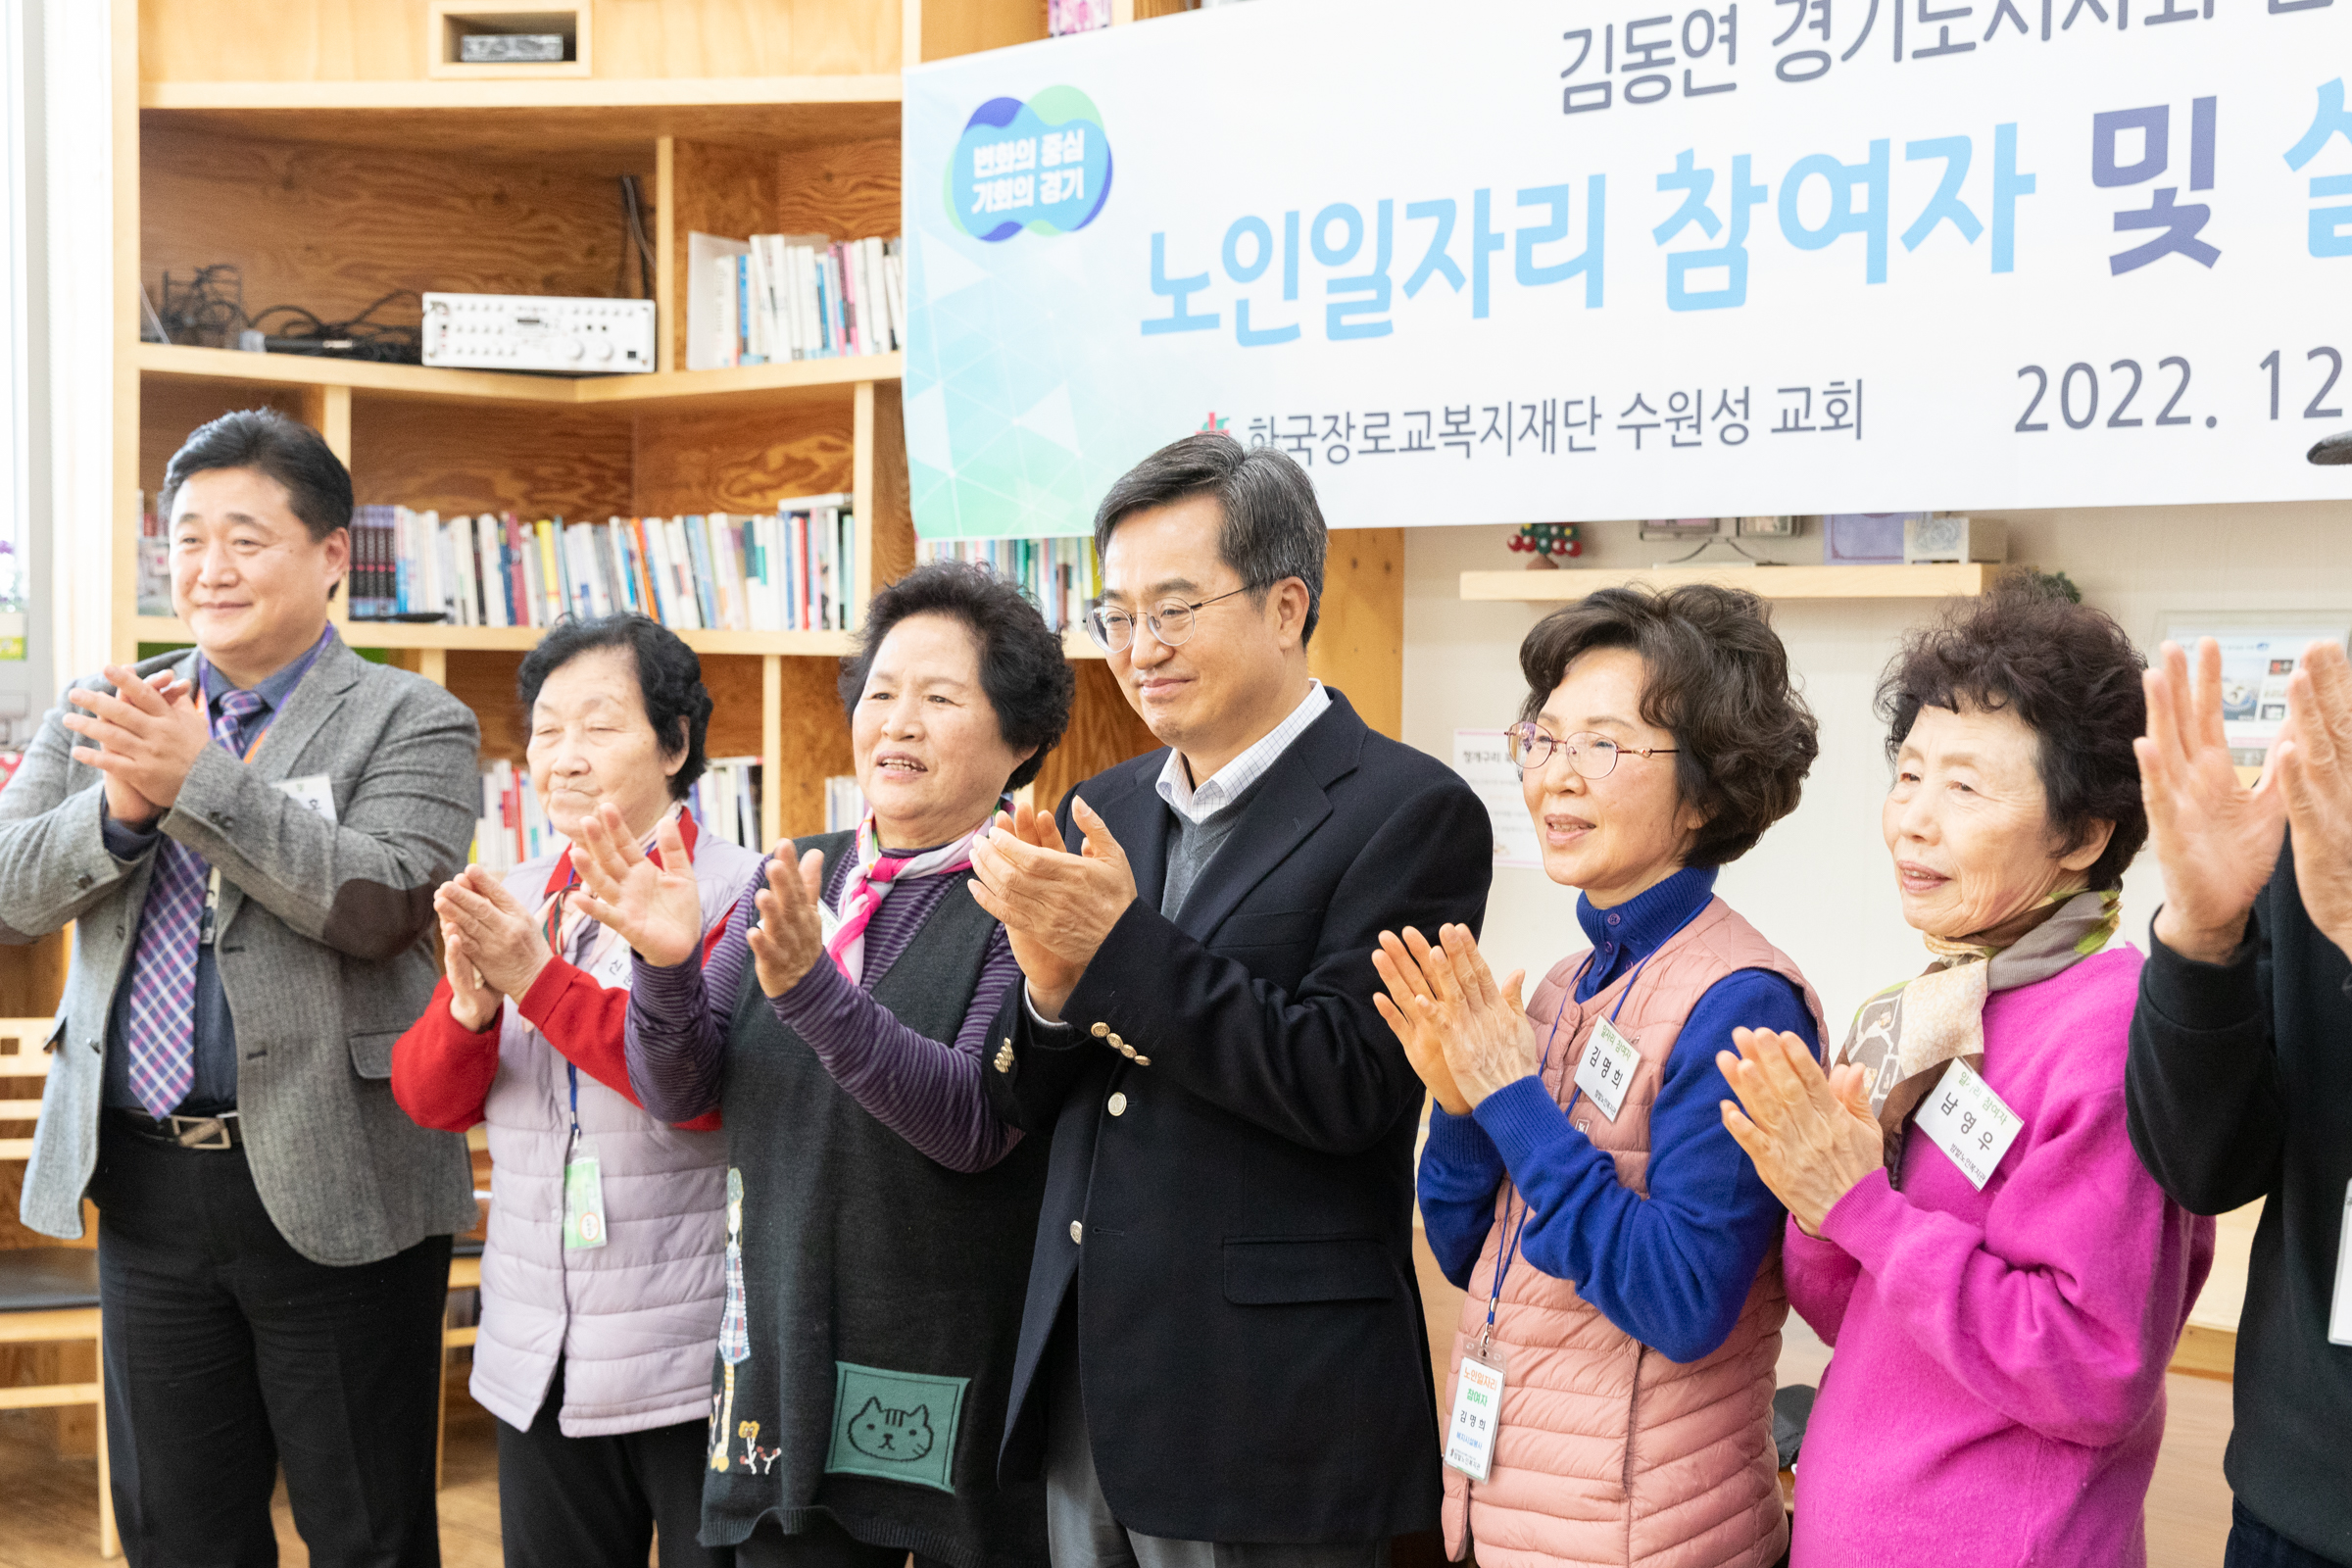 김동연 경기도지사는 지난해 12월 27일 열린 공익형 노인 일자리 참여자 현장 간담회 자리에서 공익형 노인 일자리 10만여 개 확대의 뜻을 밝혔다. 